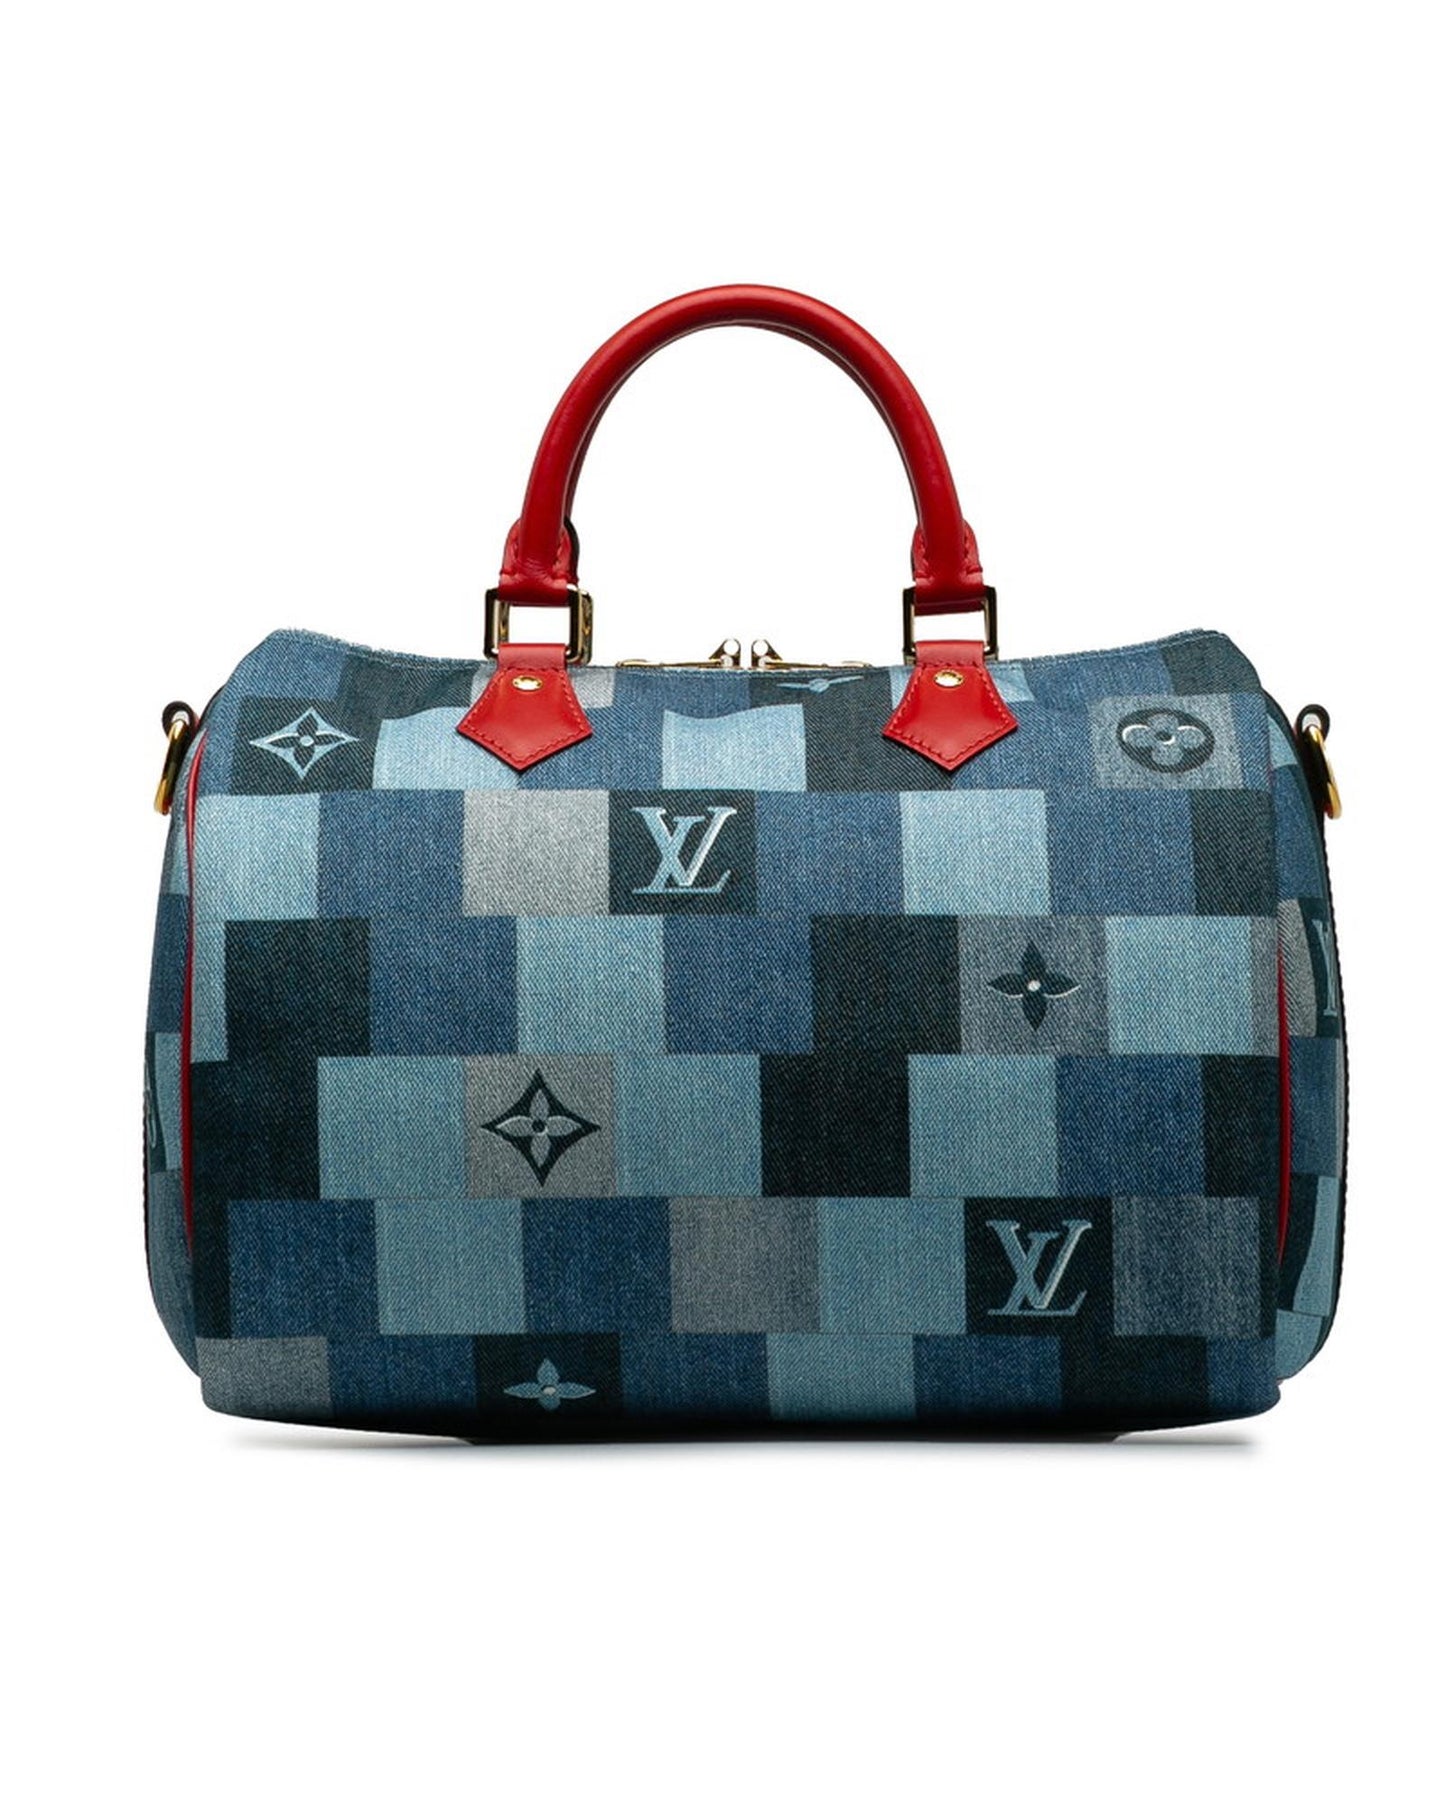 Louis Vuitton Women's Monogram Denim Speedy Bandouliere 30 Bag in A Condition in Blue